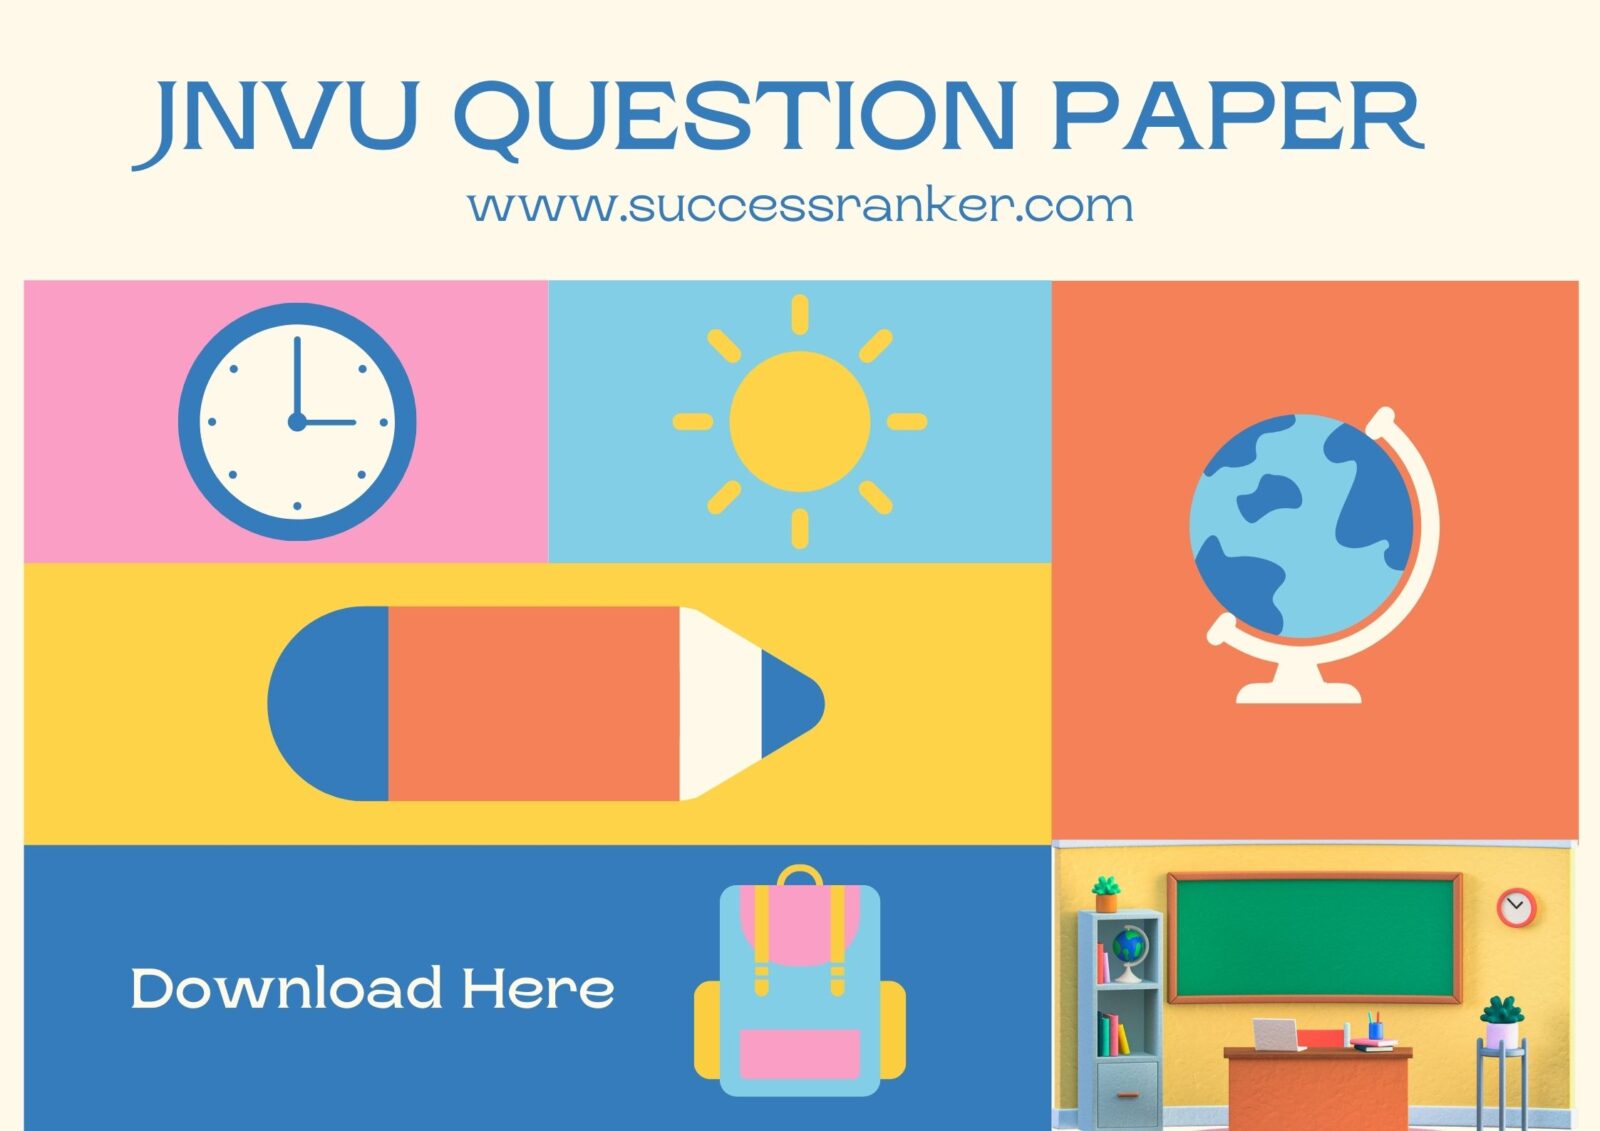 JNVU Question Paper